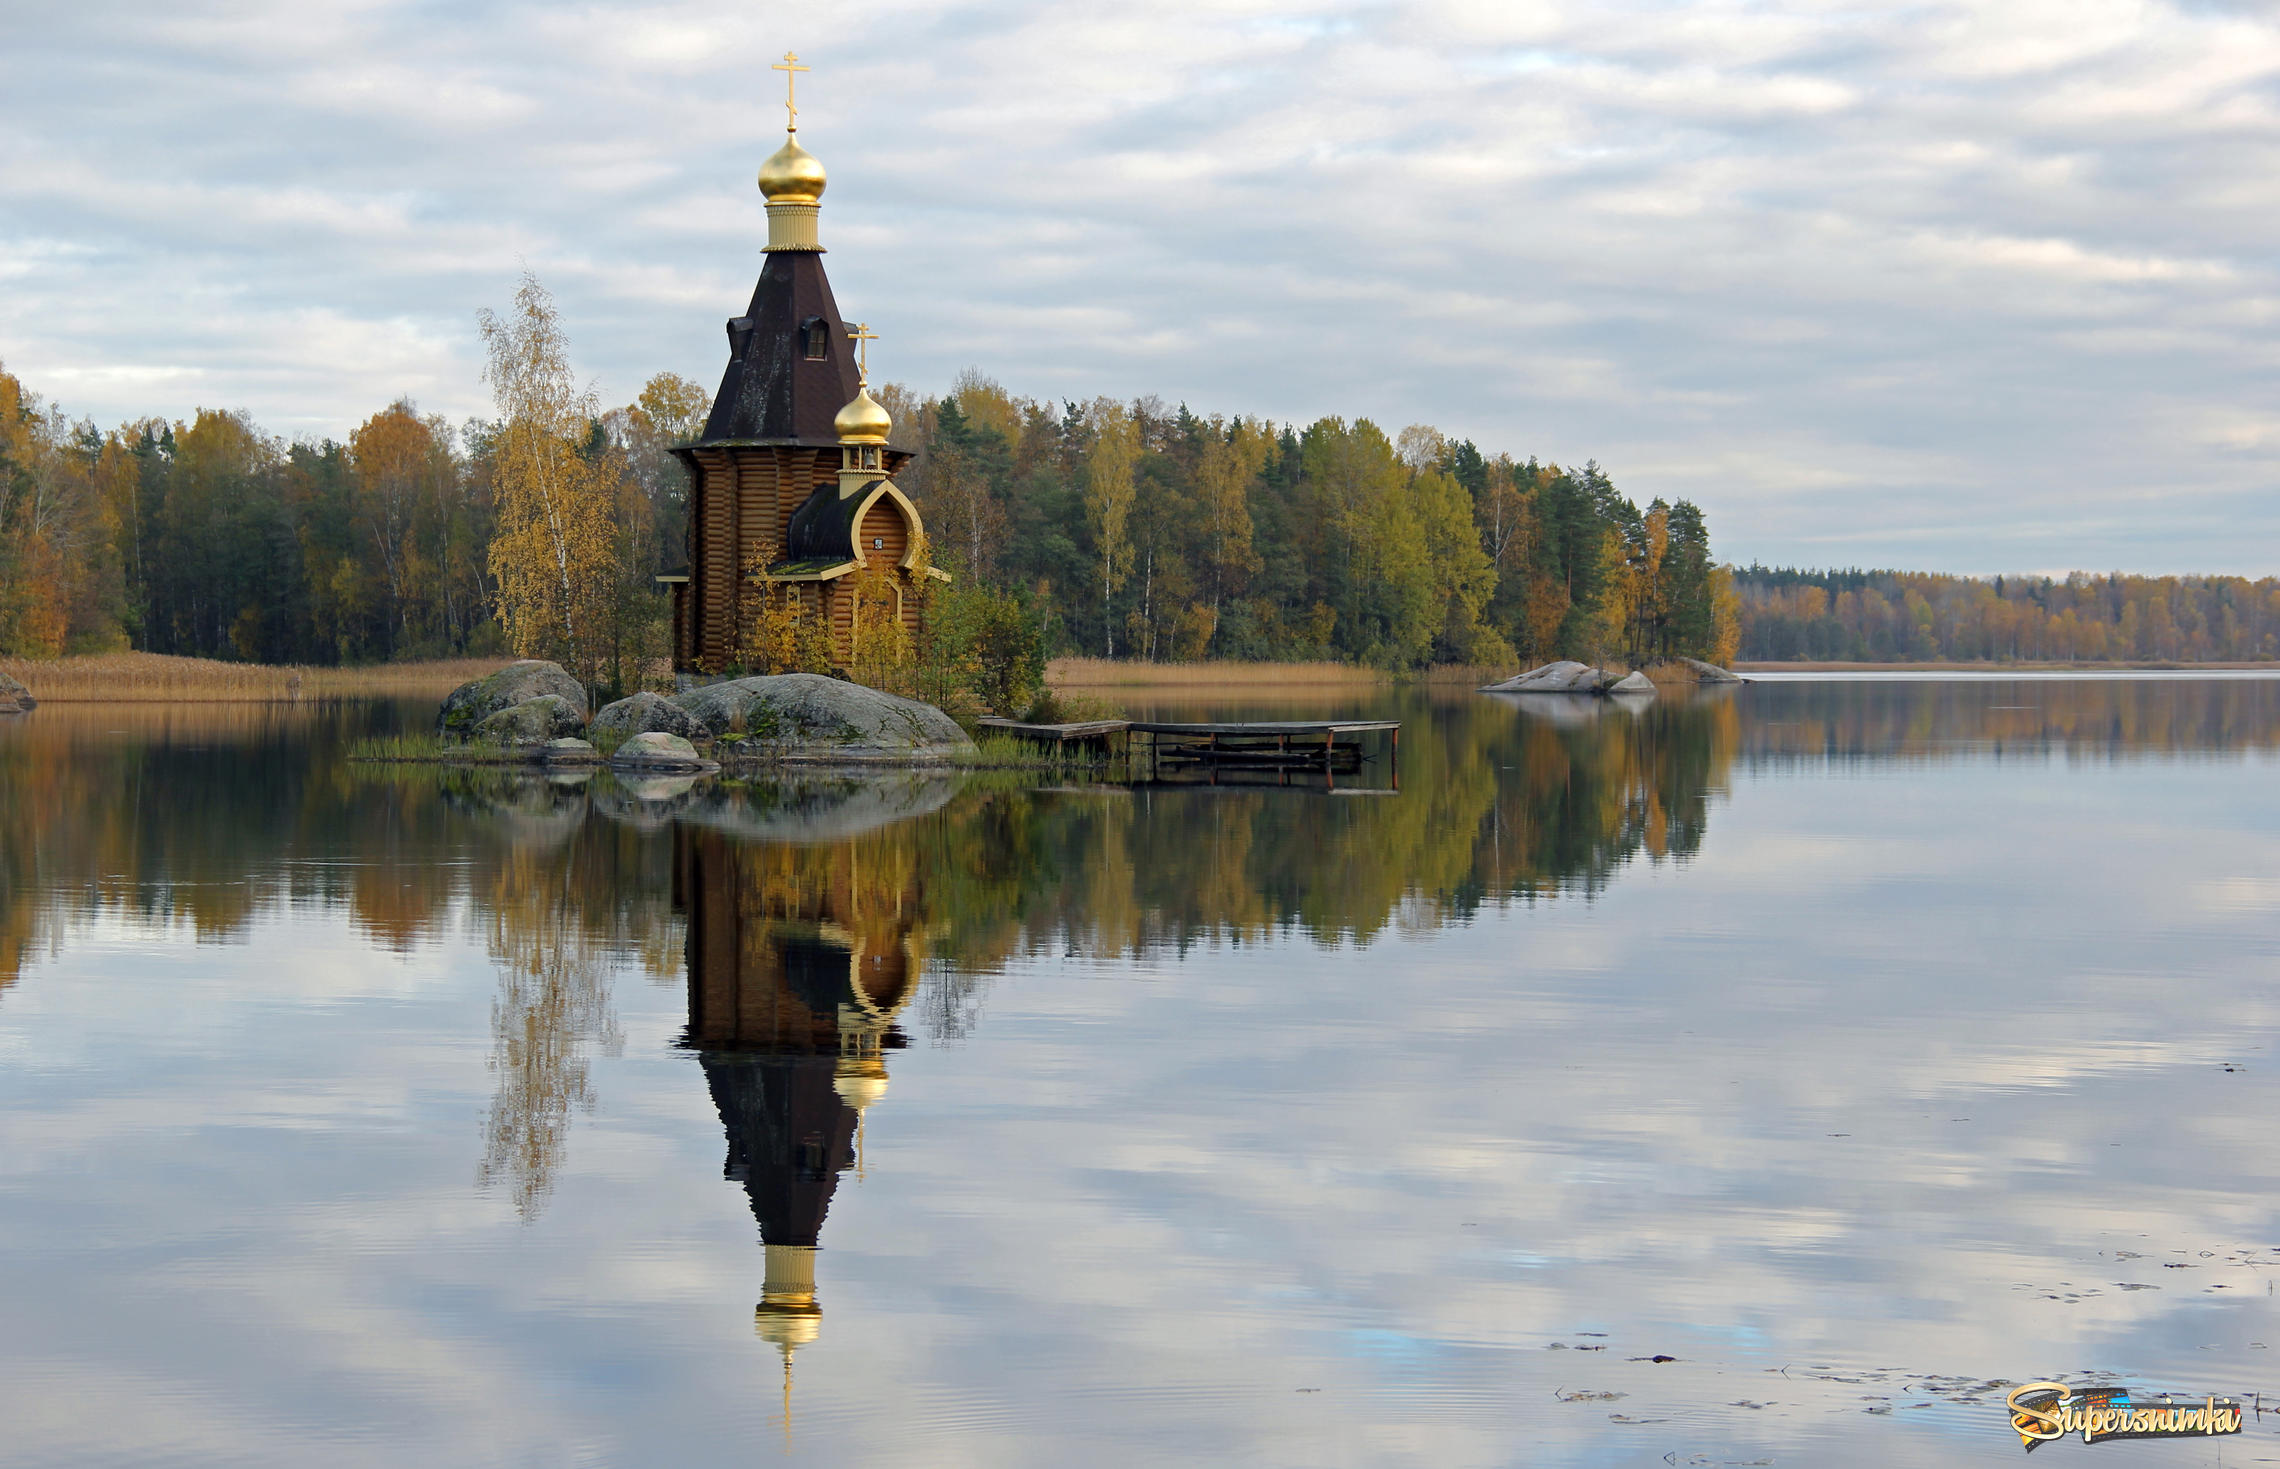 Отражение церкви в воде